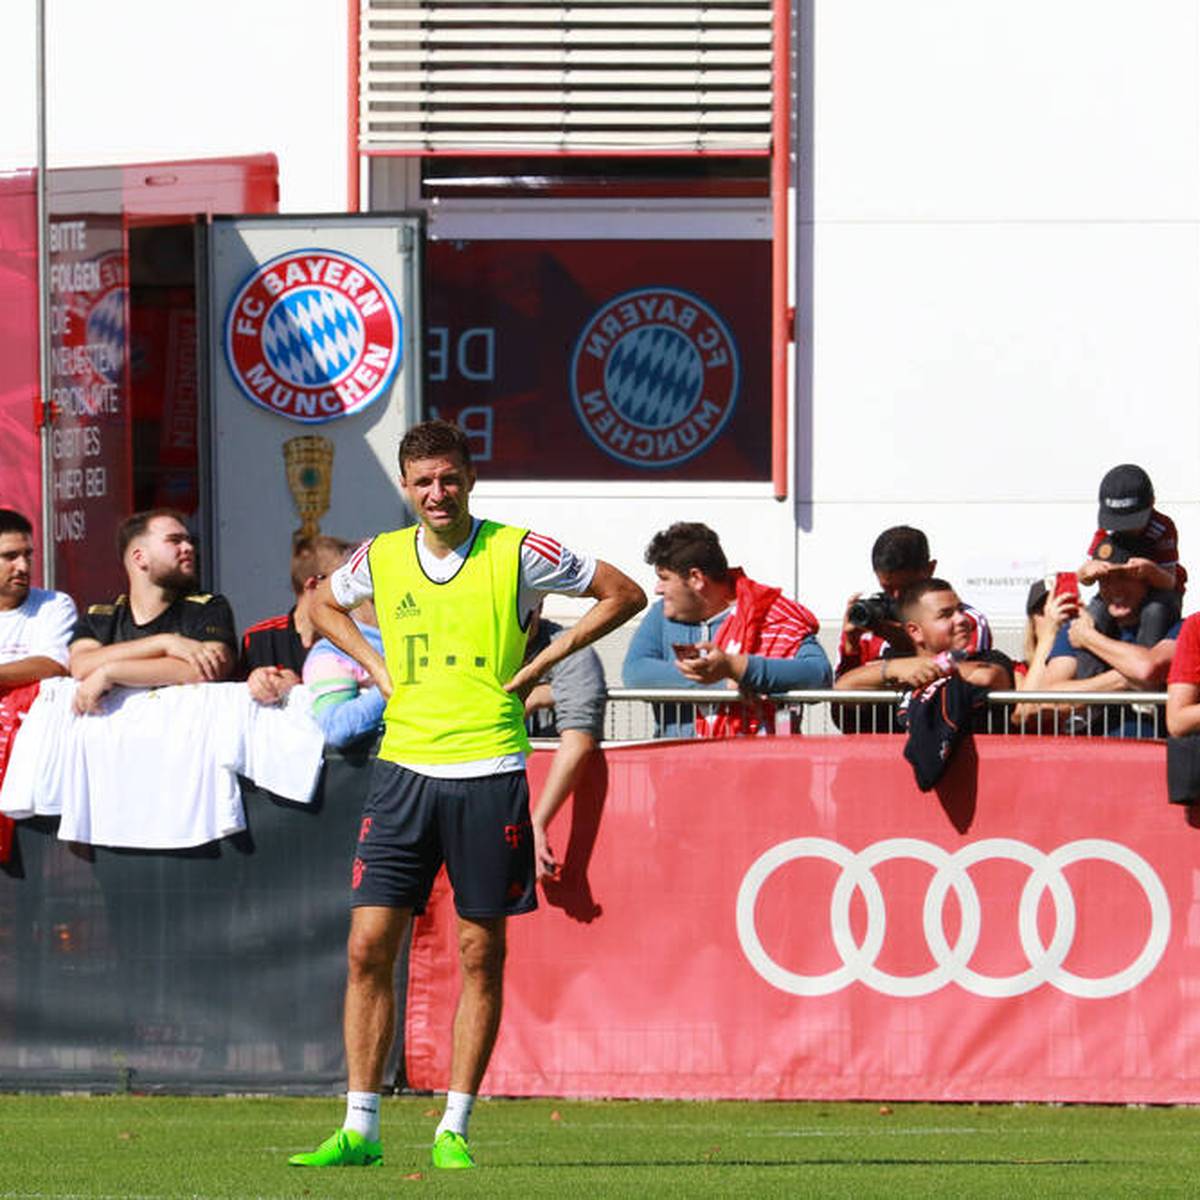 Der FC Bayern ist unmittelbar betroffen von der neuen Corona-Welle in München - und trifft eine Entscheidung, die auch für die Fans Auswirkungen hat. 